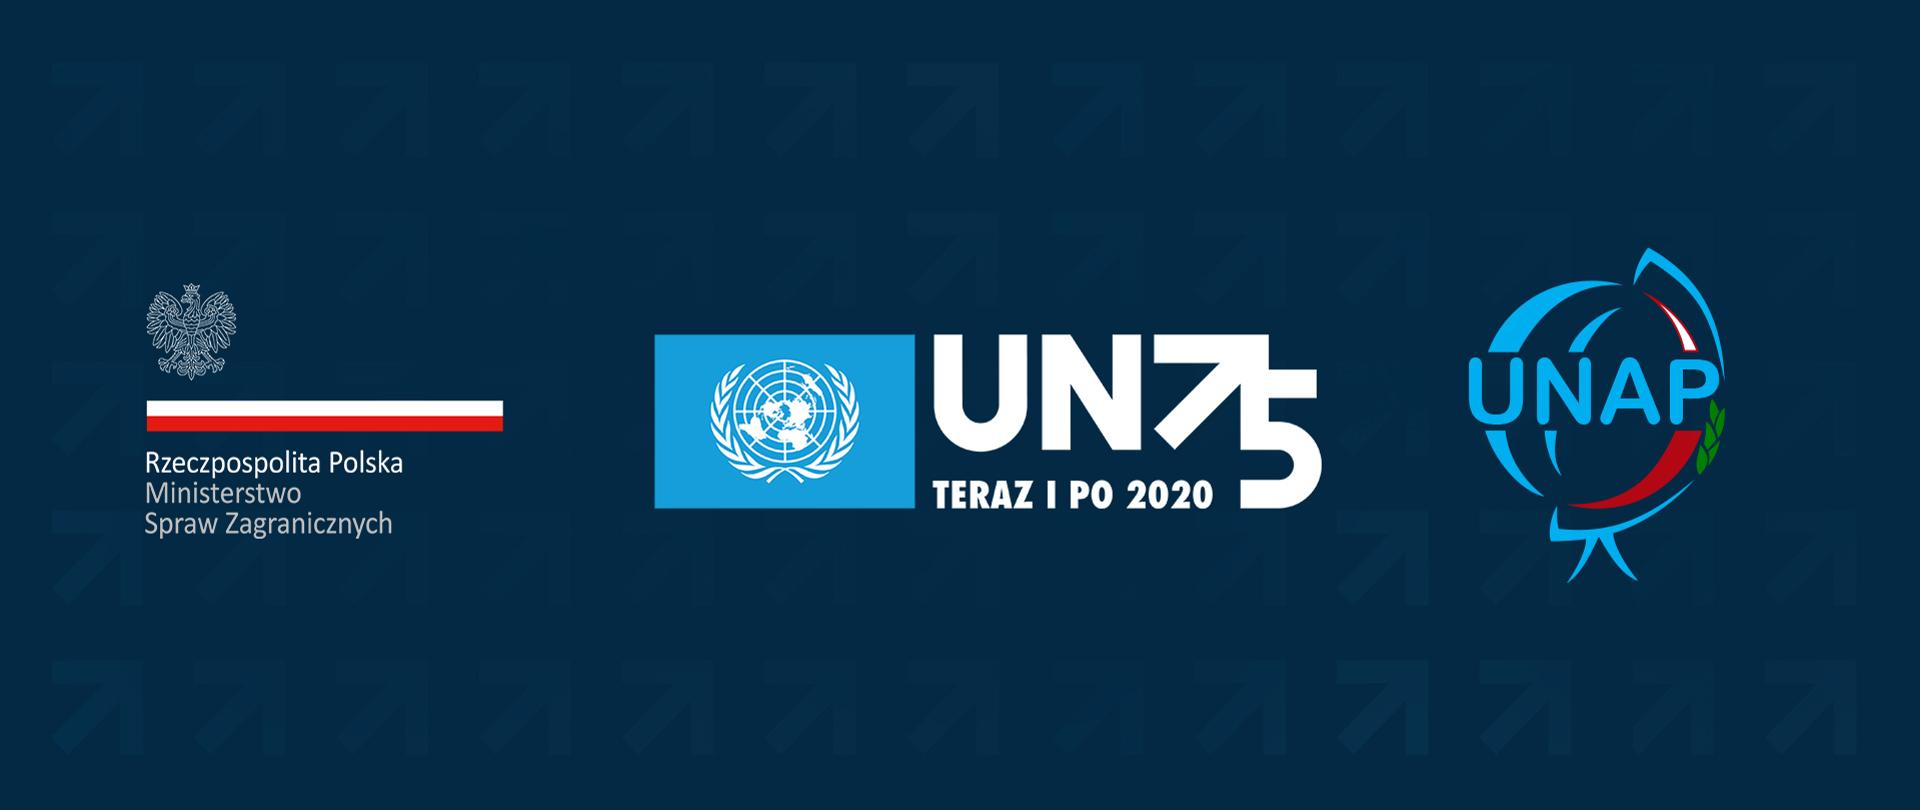 Z okazji 75-lecia powstania Organizacji Narodów Zjednoczonych MSZ zorganizował serię paneli eksperckich oraz kampanię informacyjno-promocyjną pod hasłem Tydzień ONZ.